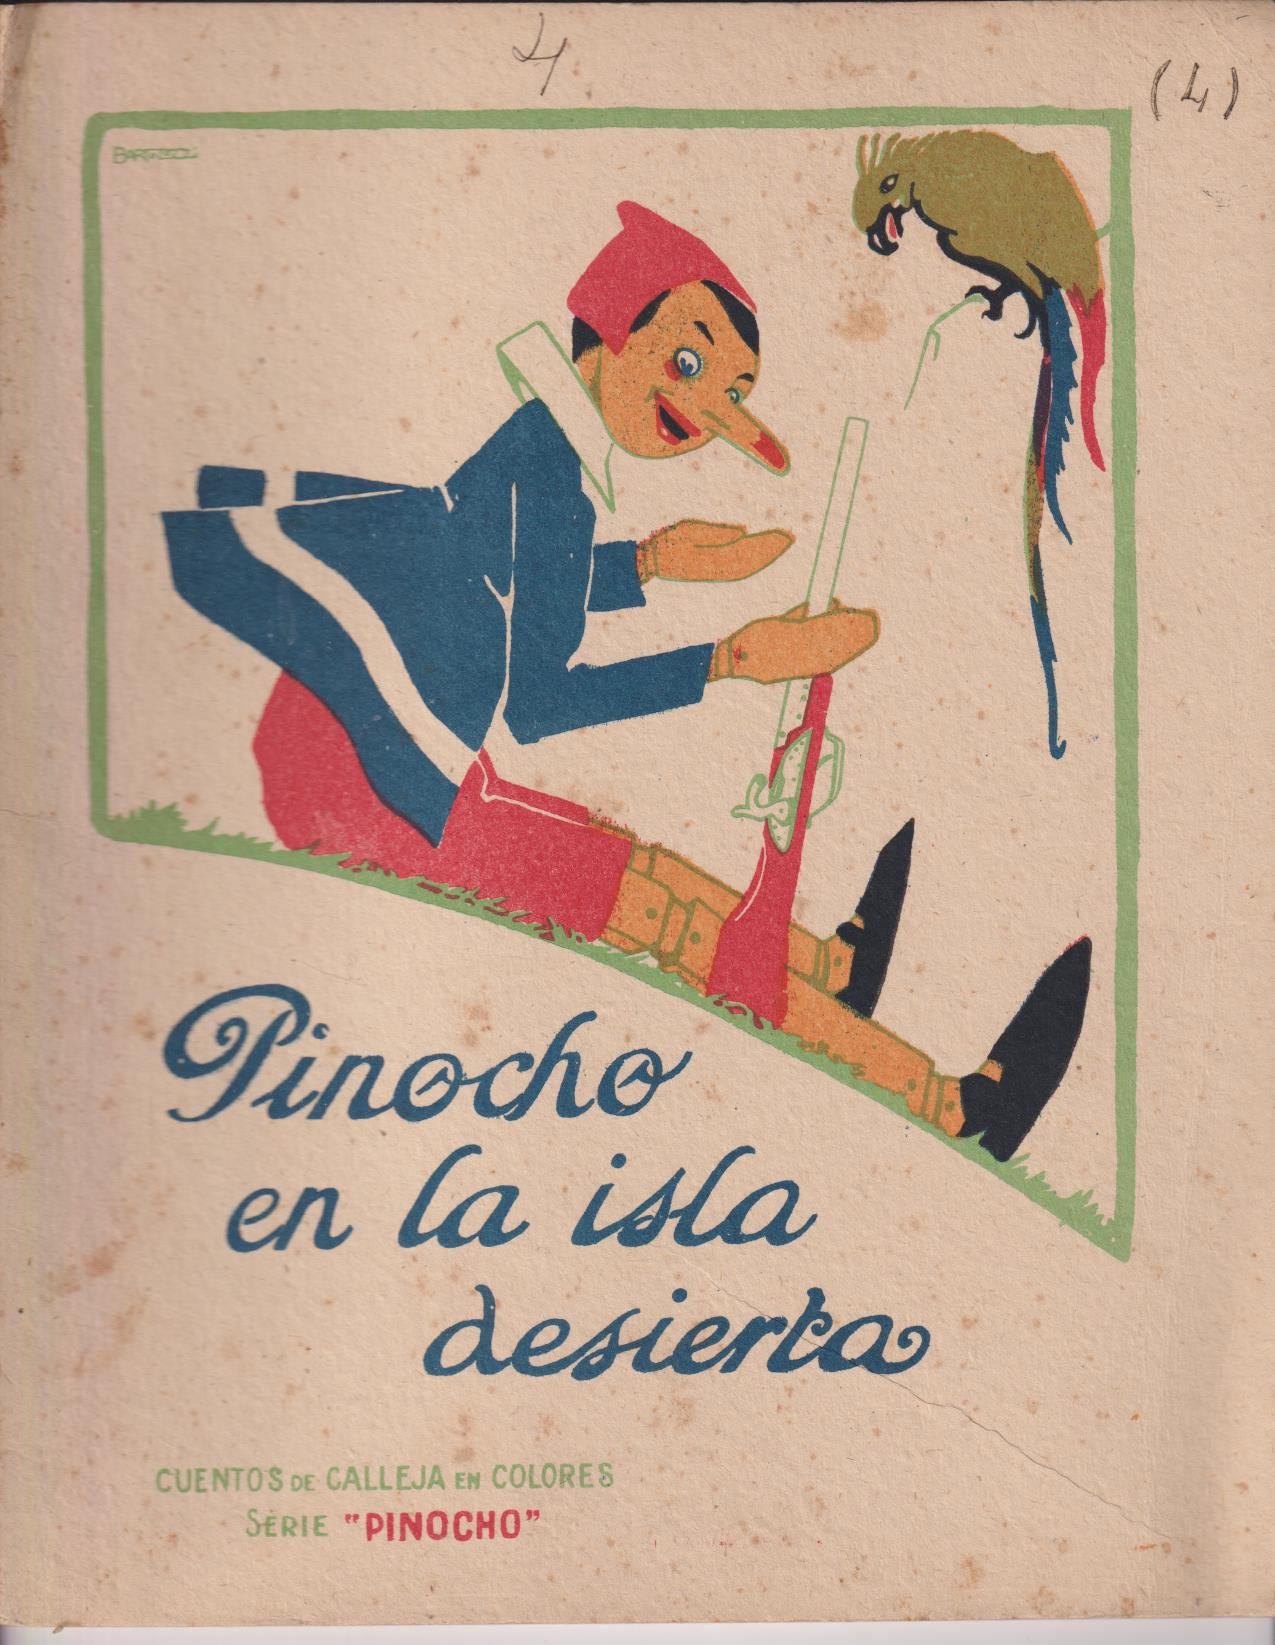 Pinocho nº 4. En la Isla Desierta. 1º Edición Calleja 1919. (28x22) 16 páginas. MUY ESCASO